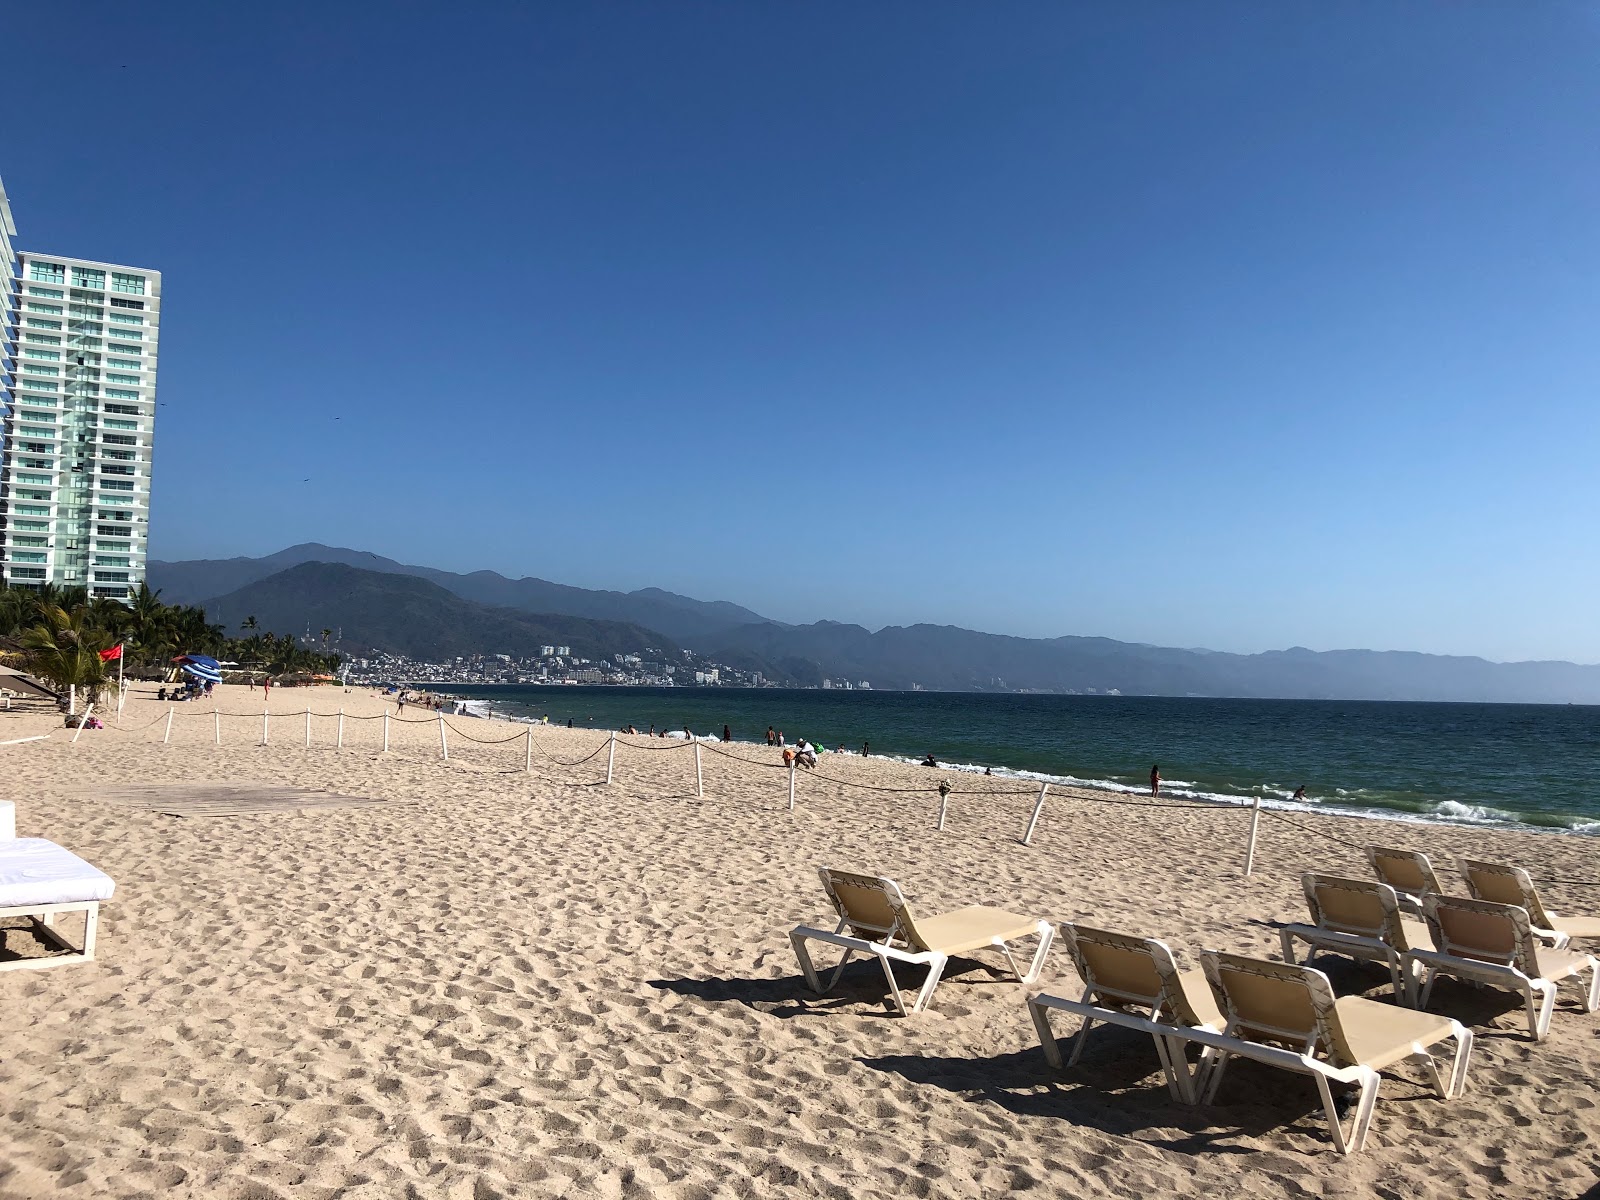 Playa de Oro'in fotoğrafı geniş plaj ile birlikte